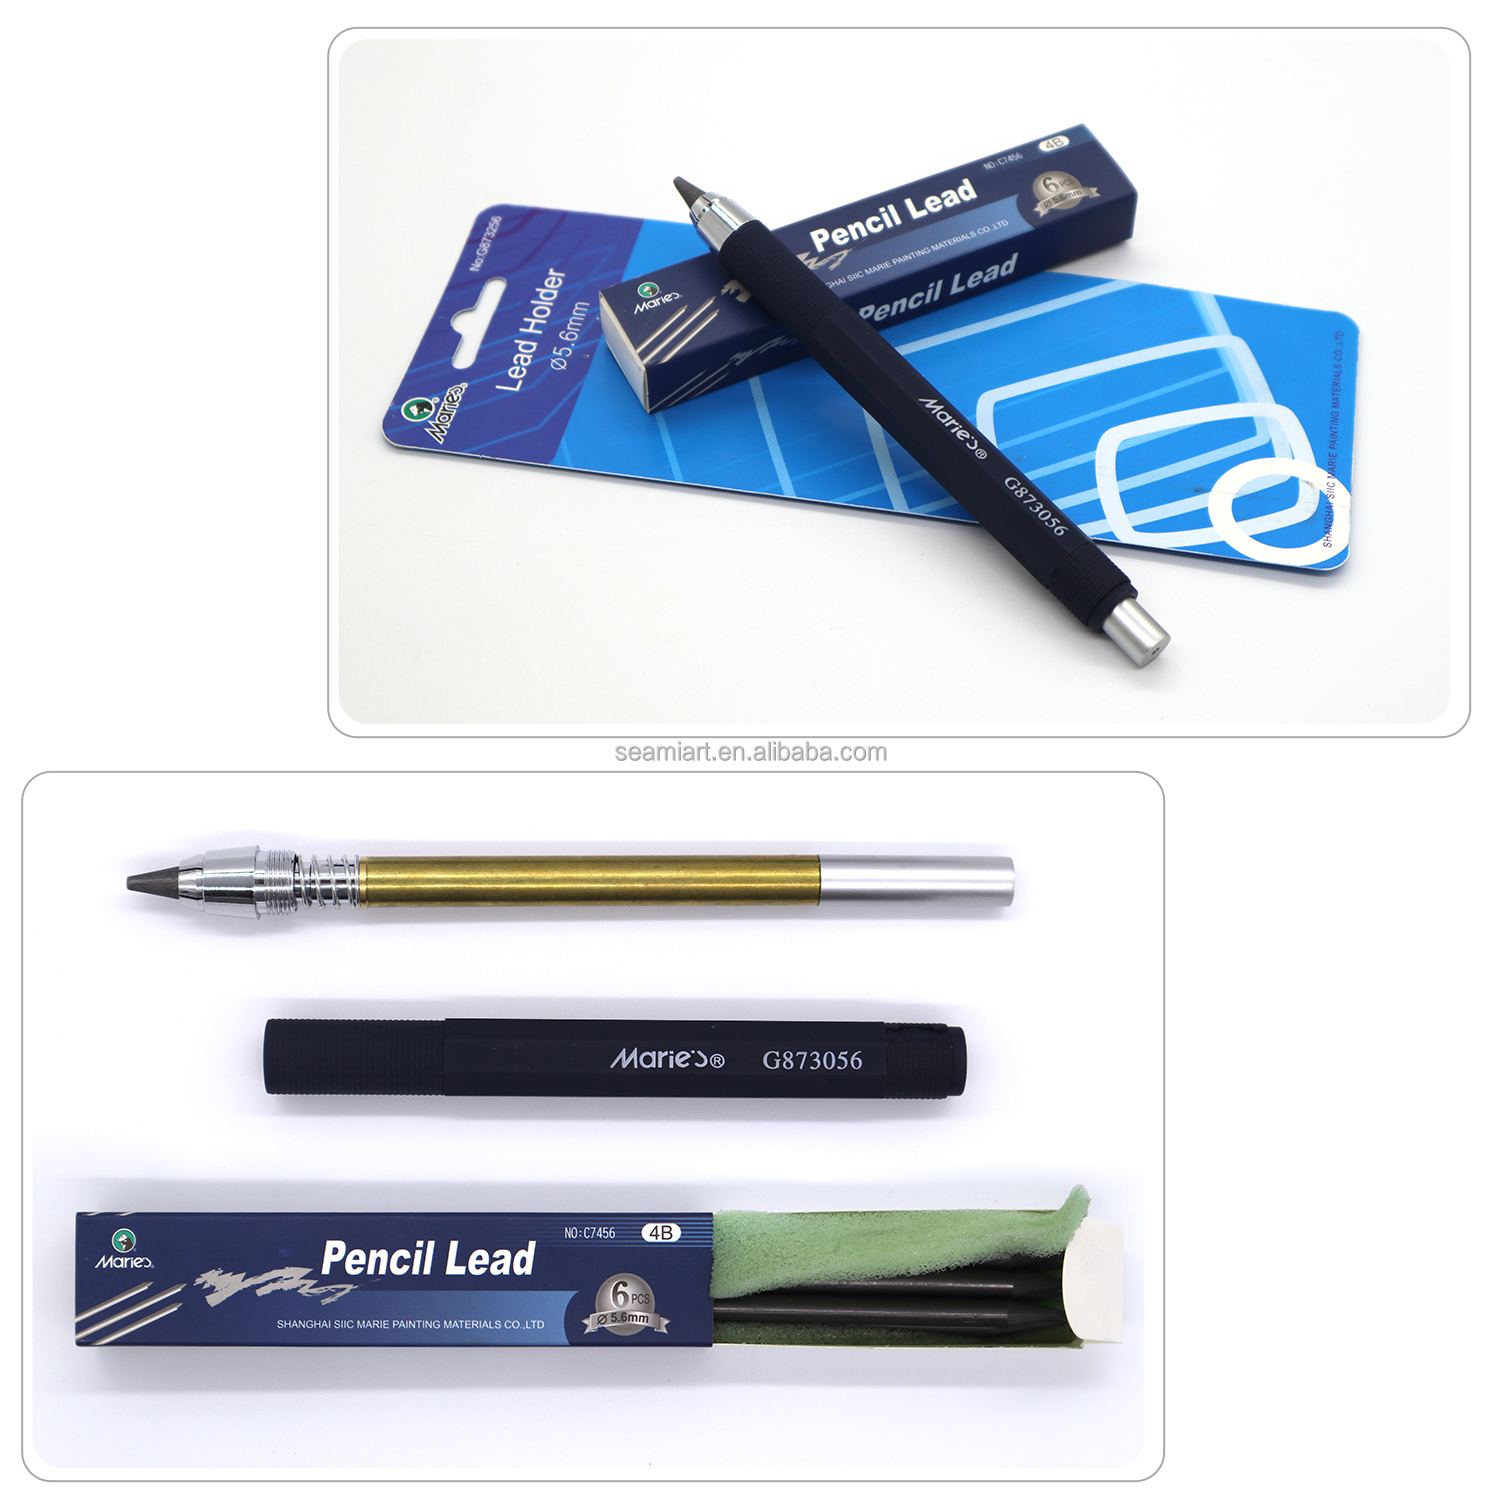 1pc 5,6mm Automatische Bleistift -Set 4B -Blei für mechanische Bleistiftskizzle -Zeichnung Bleistift Artist Art Supplies1